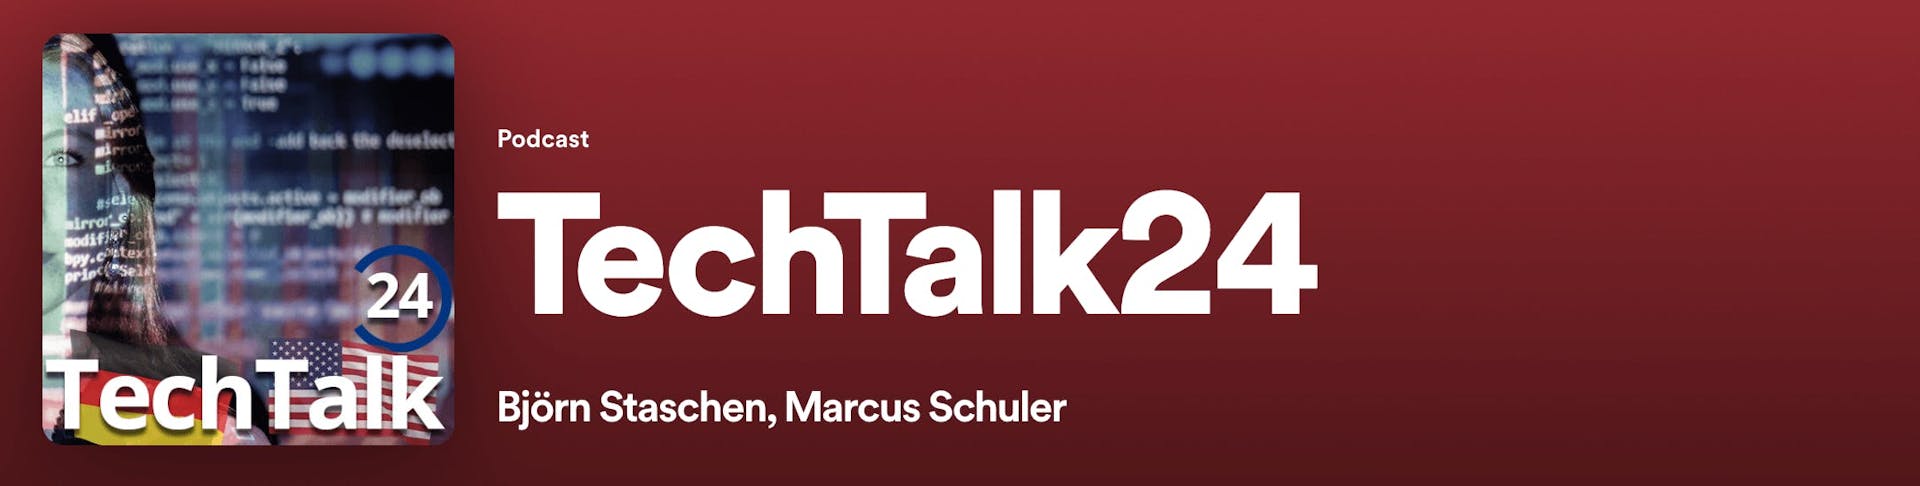 TechTalk24 Podcast Banner